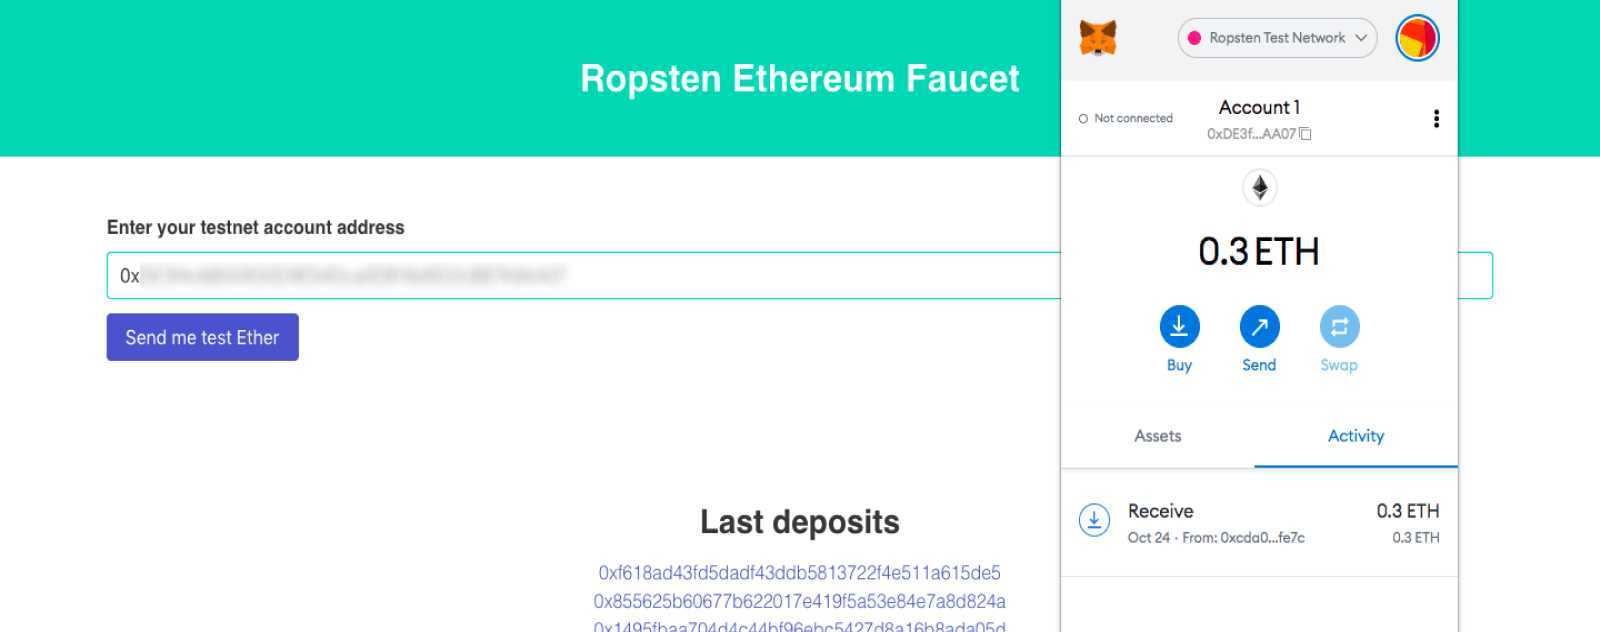 Using Ropsten as an Ethereum testnet